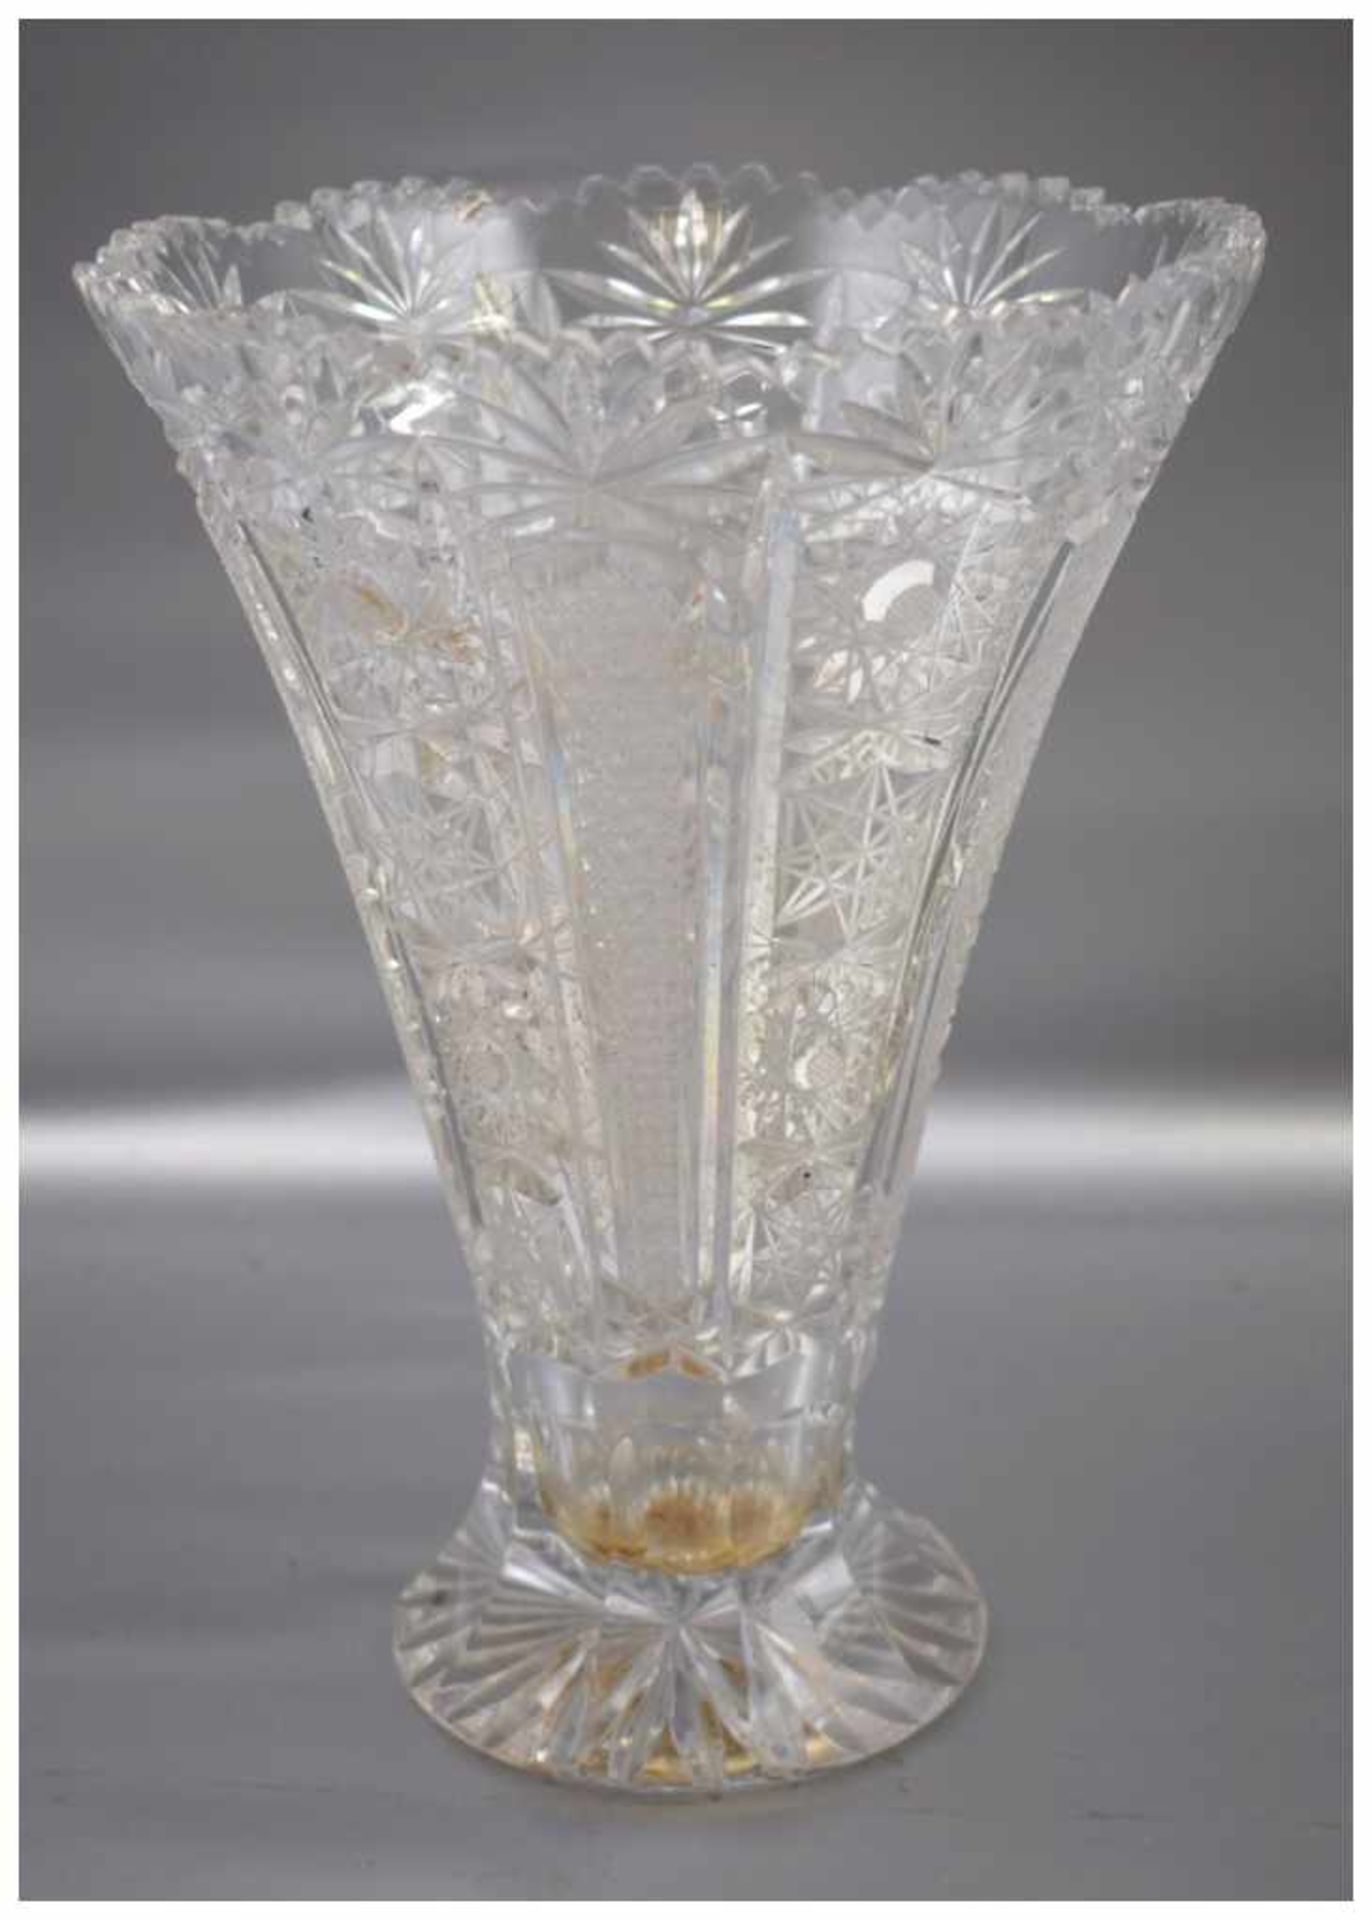 Vase farbl. Kristallglas, geschliffen verziert, mit gezacktem Rand, H 26 cm, Dm 19 cm